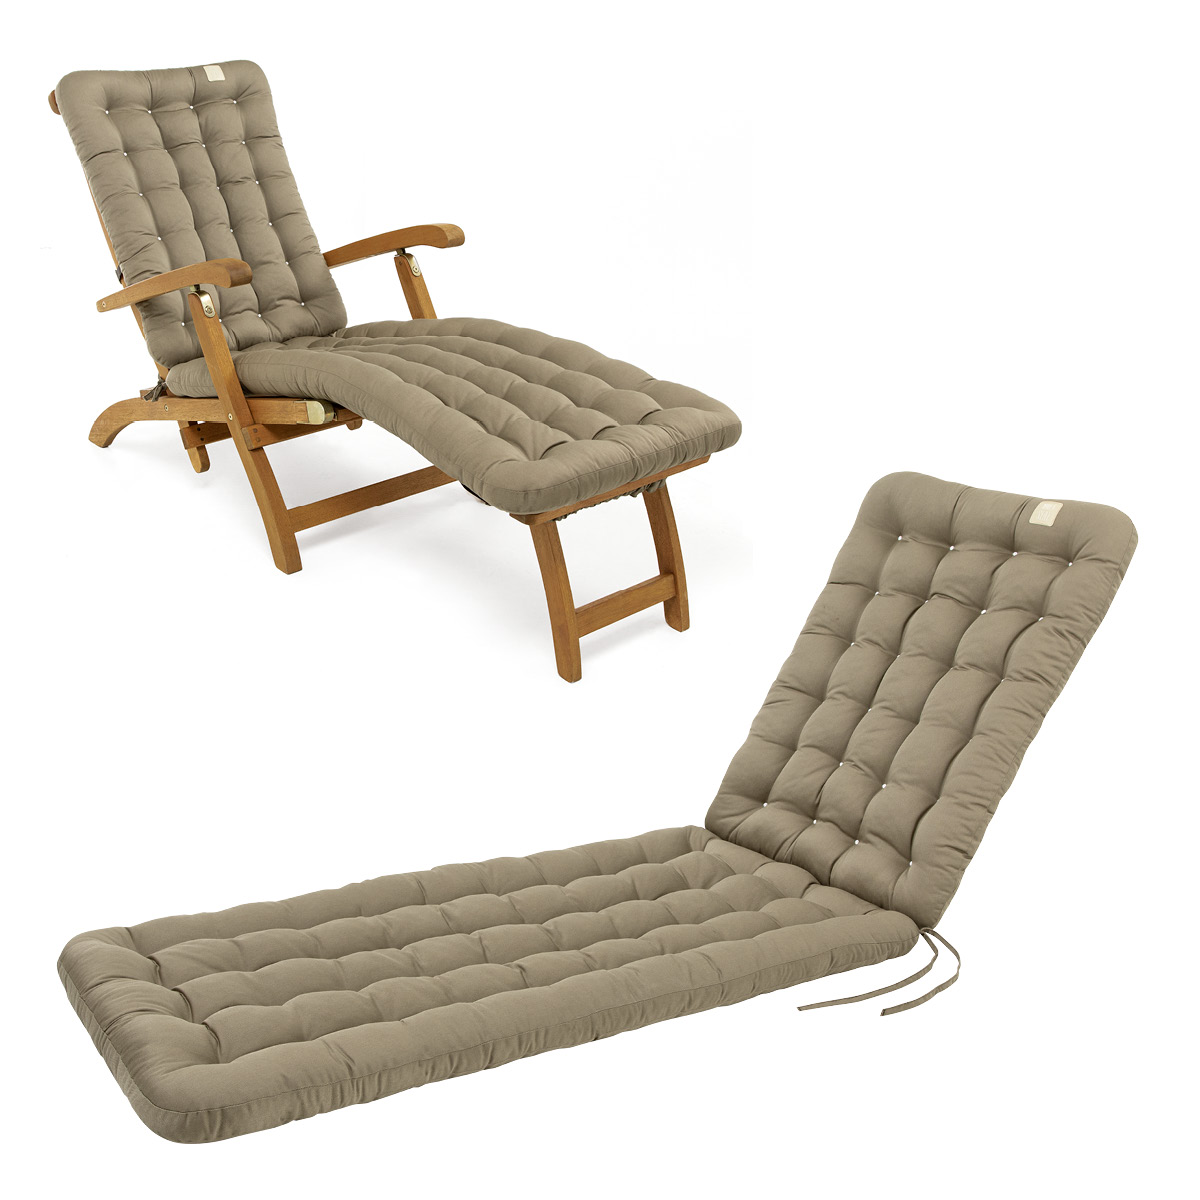 Cuscino per sedia a sdraio | 180x50 cm | Marrone dorato